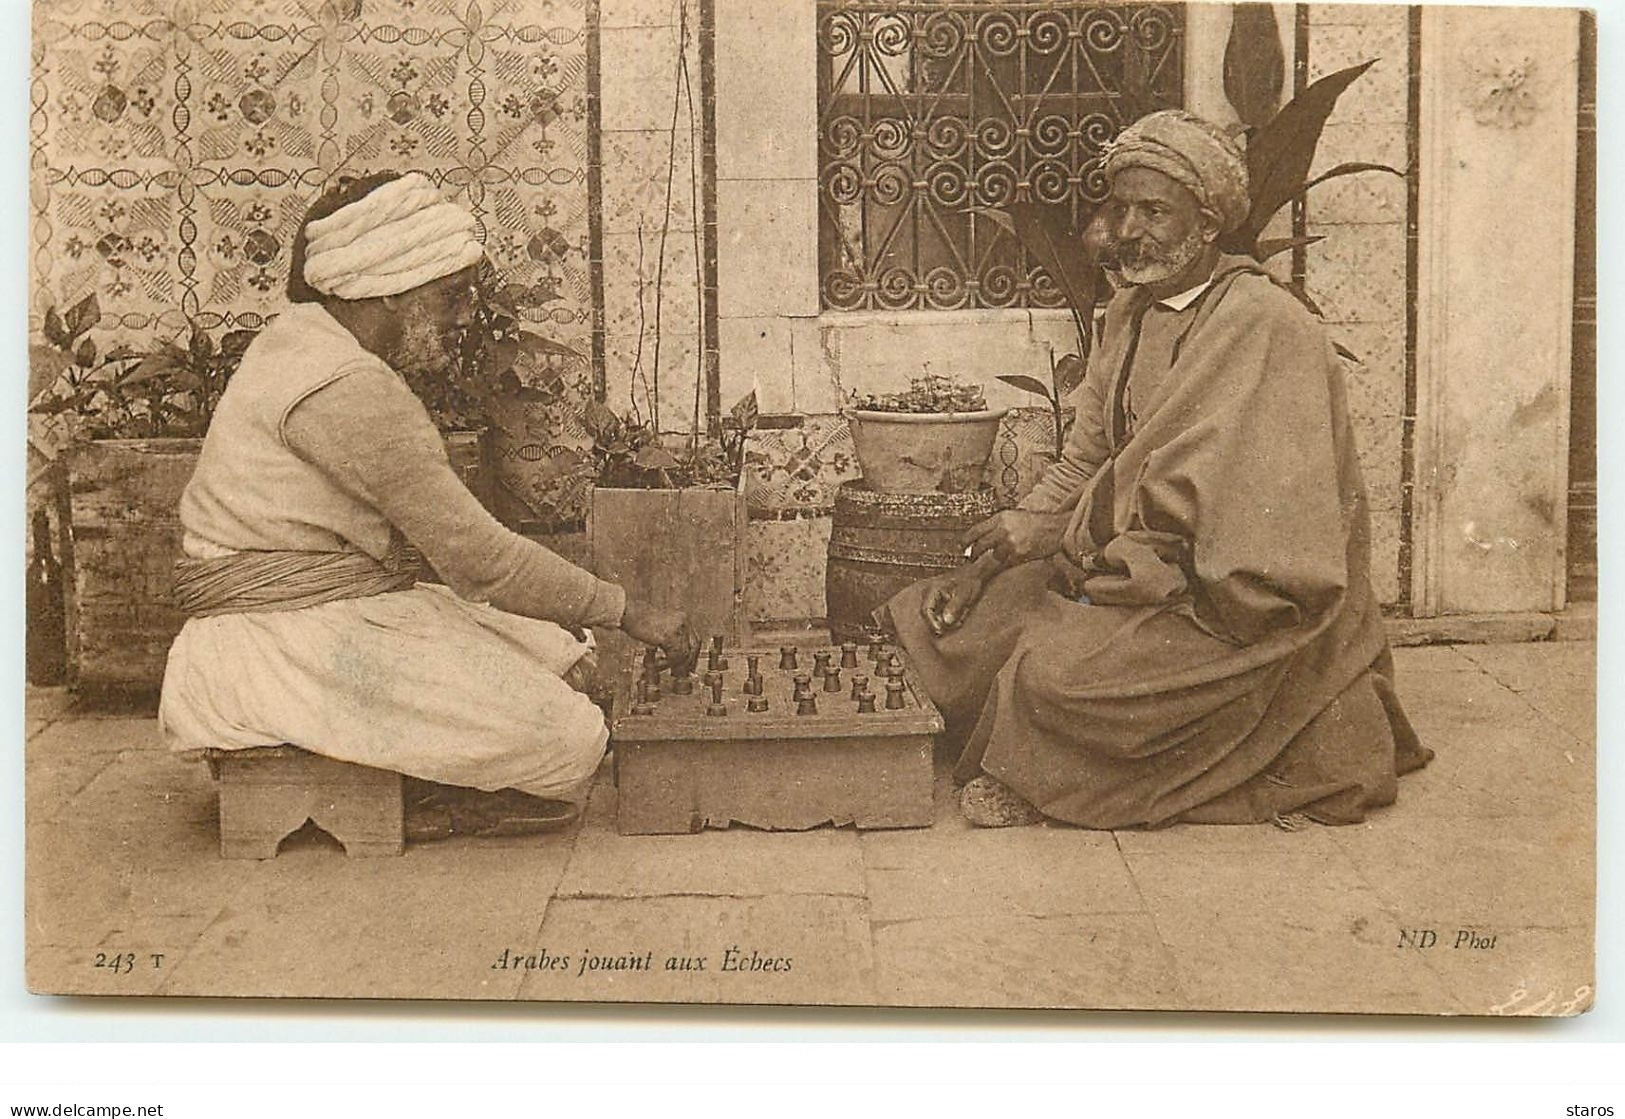 Arabes Jouant Aux Echecs - Chess